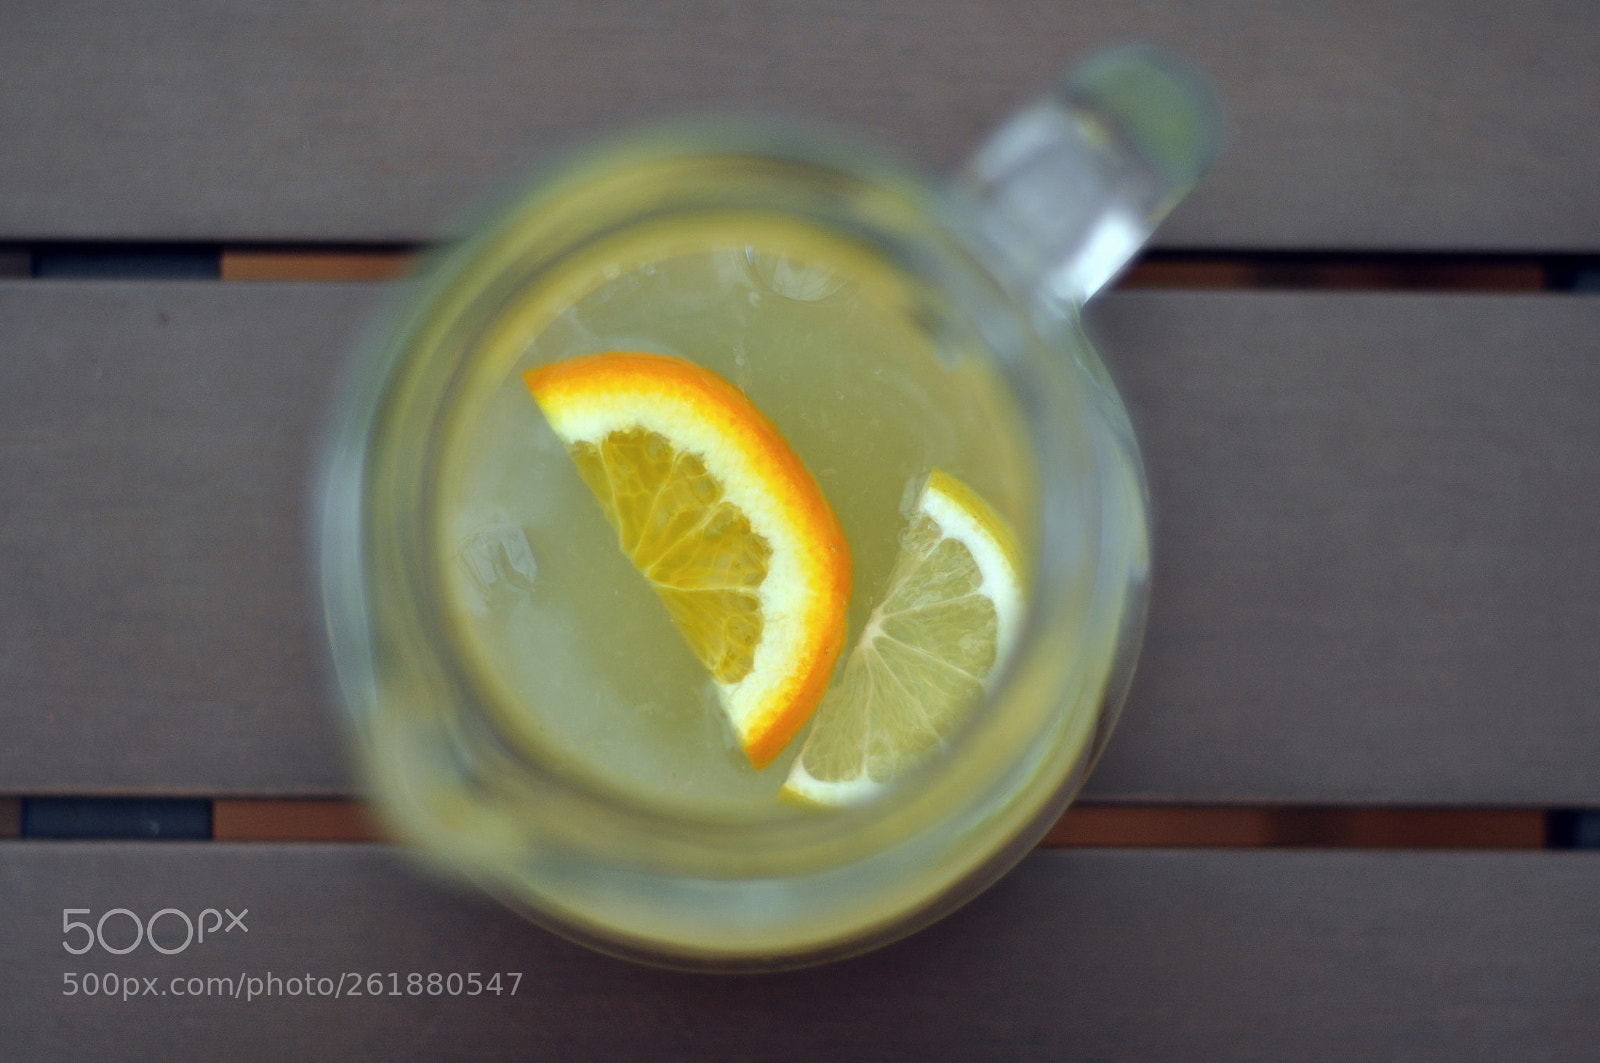 Nikon D90 sample photo. Home lemonade photography